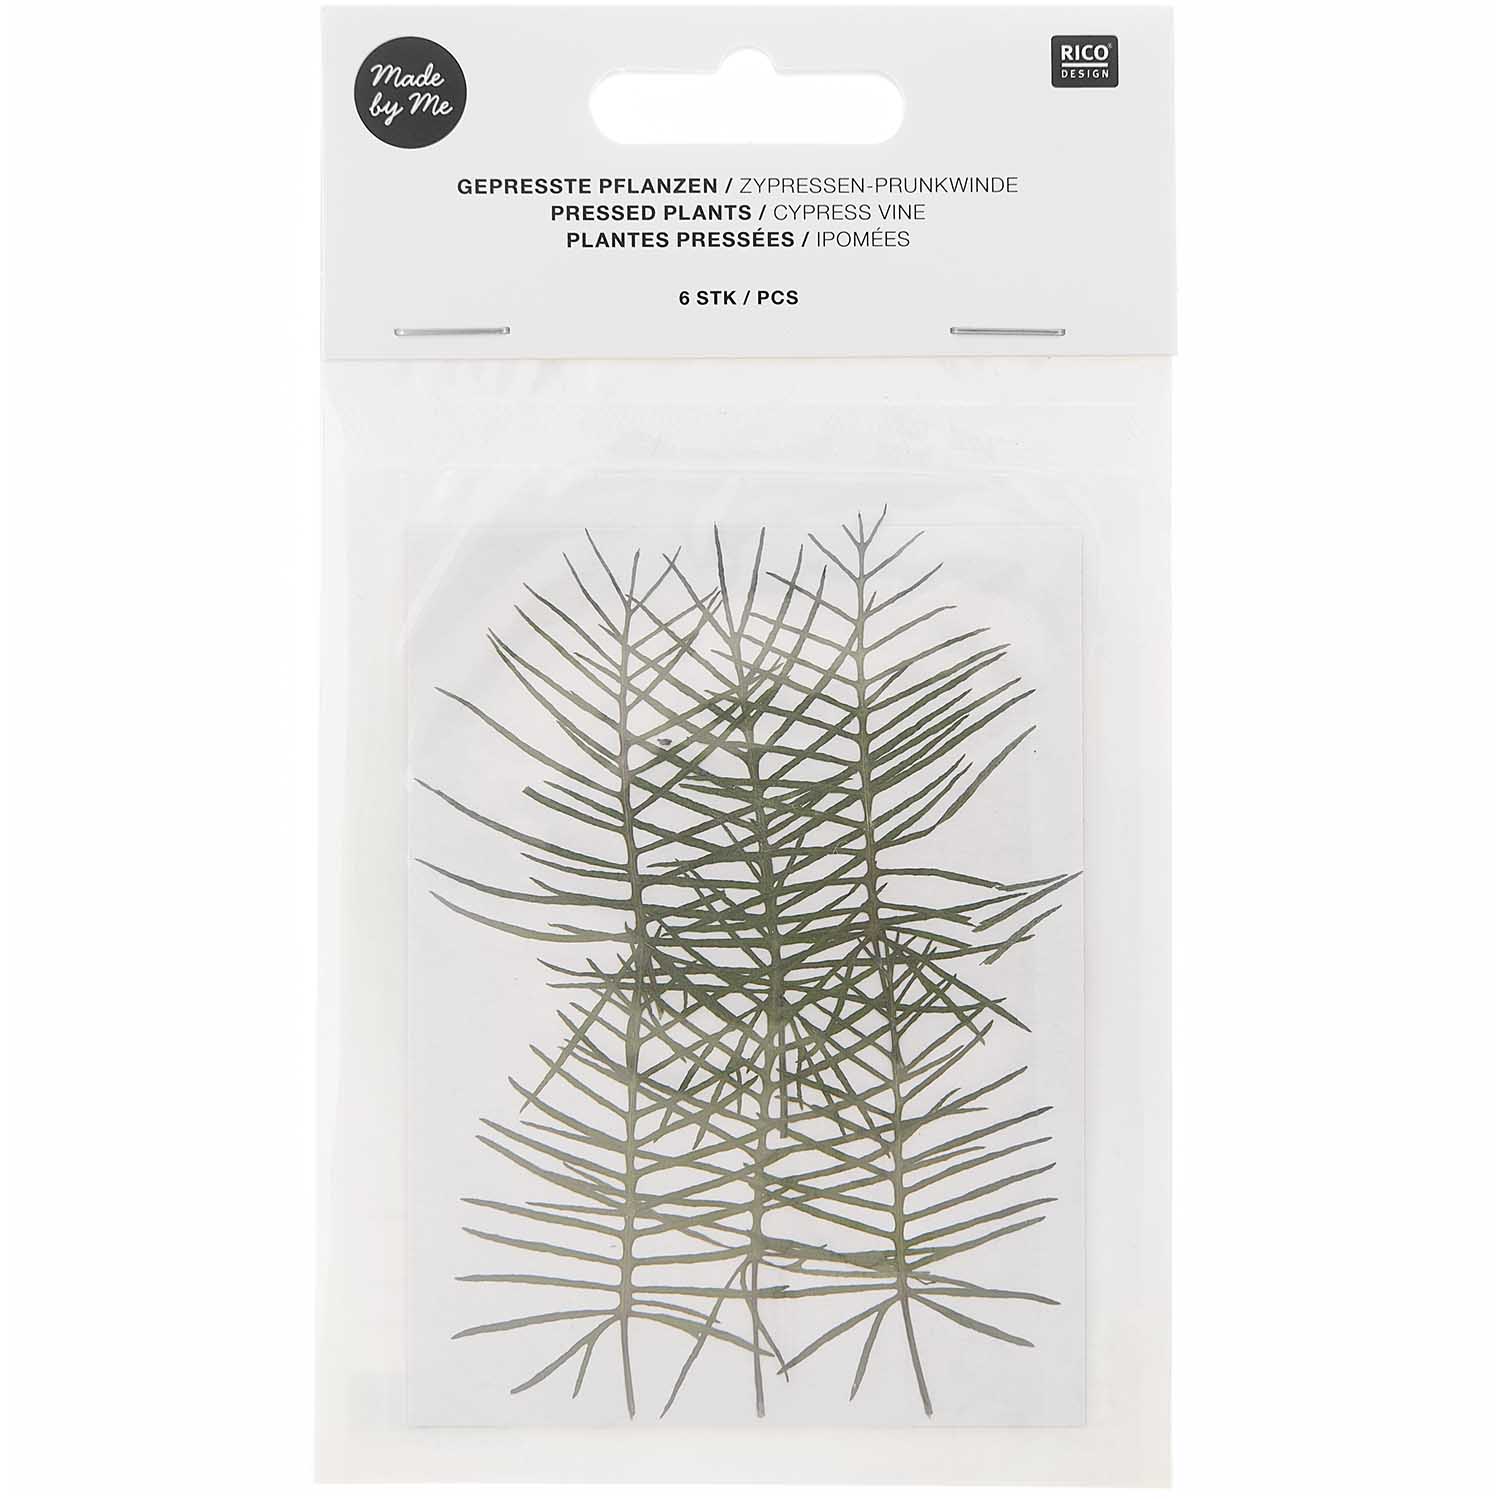 Gepresste Pflanzen Zypressen-Prunkwinde 6 Stk ca. 5x2,5cm